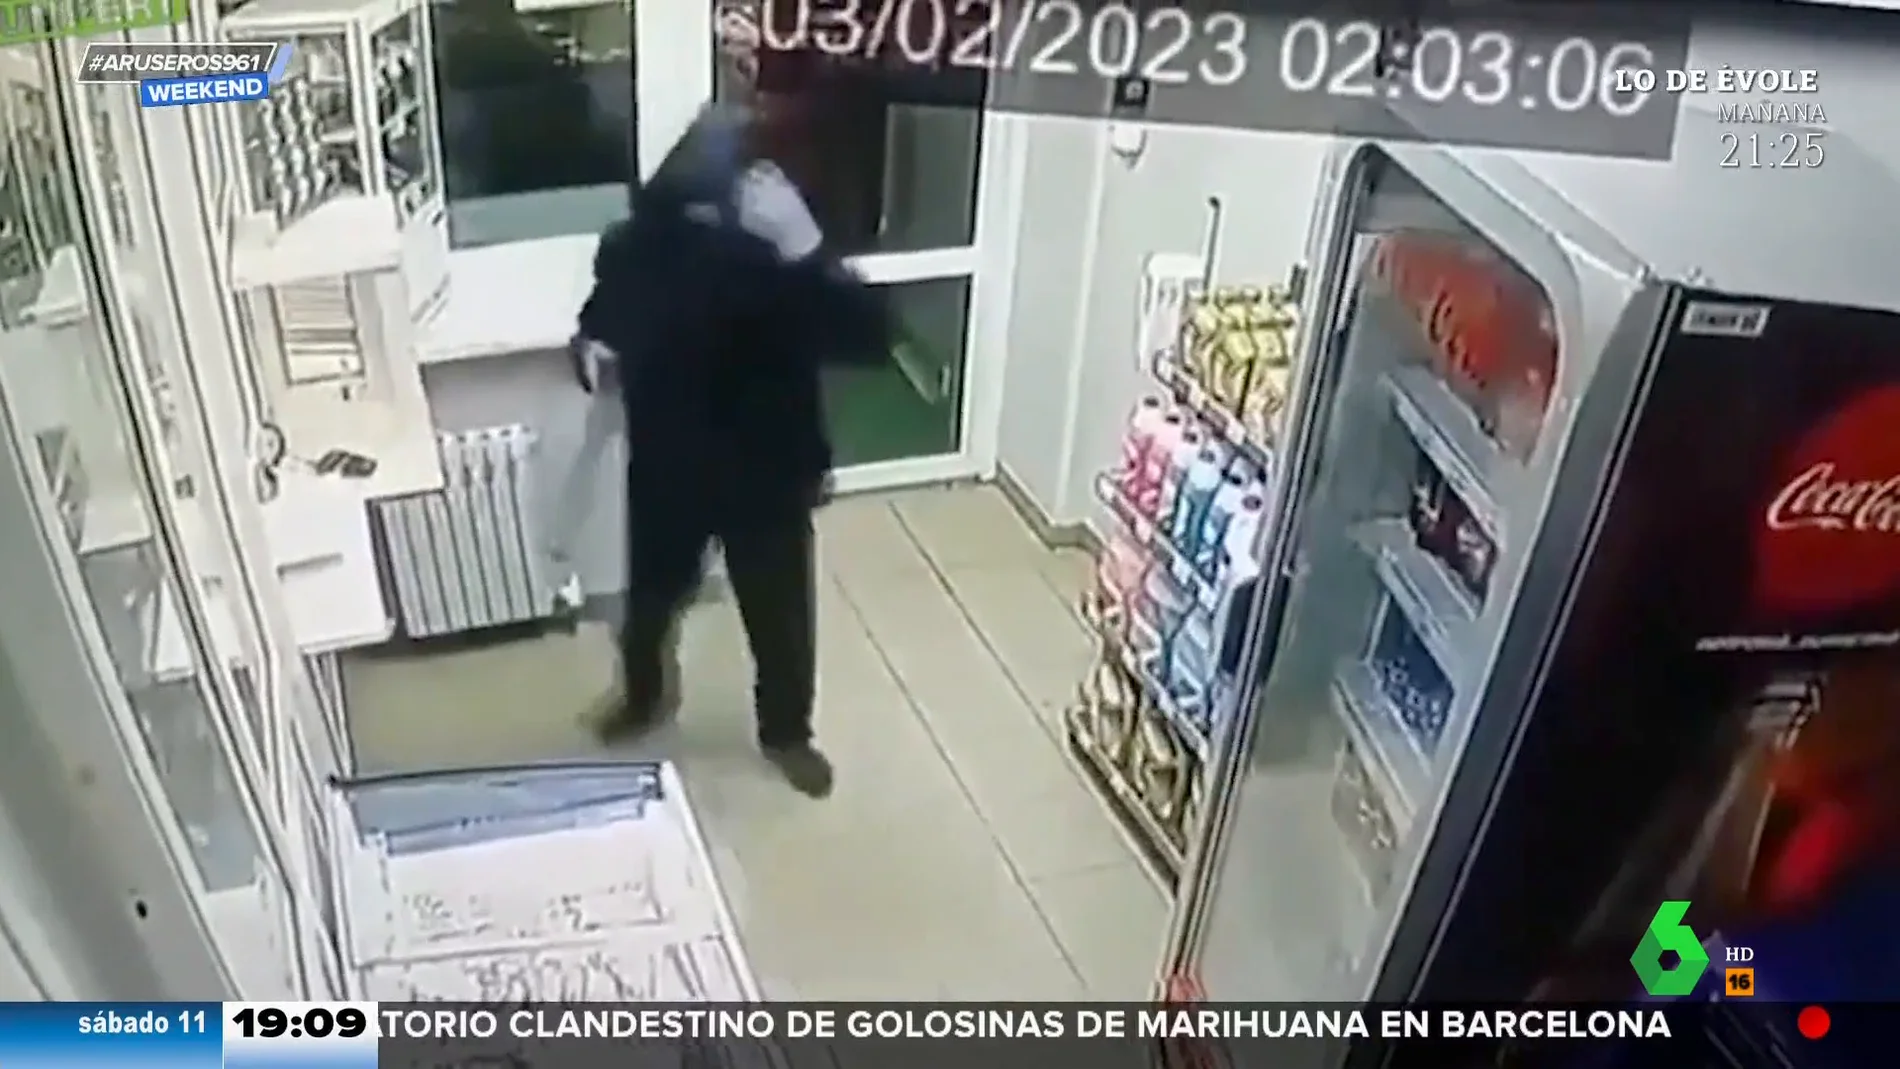 Un hombre entra armado a robar en una tienda y esto es lo primero que ocurre